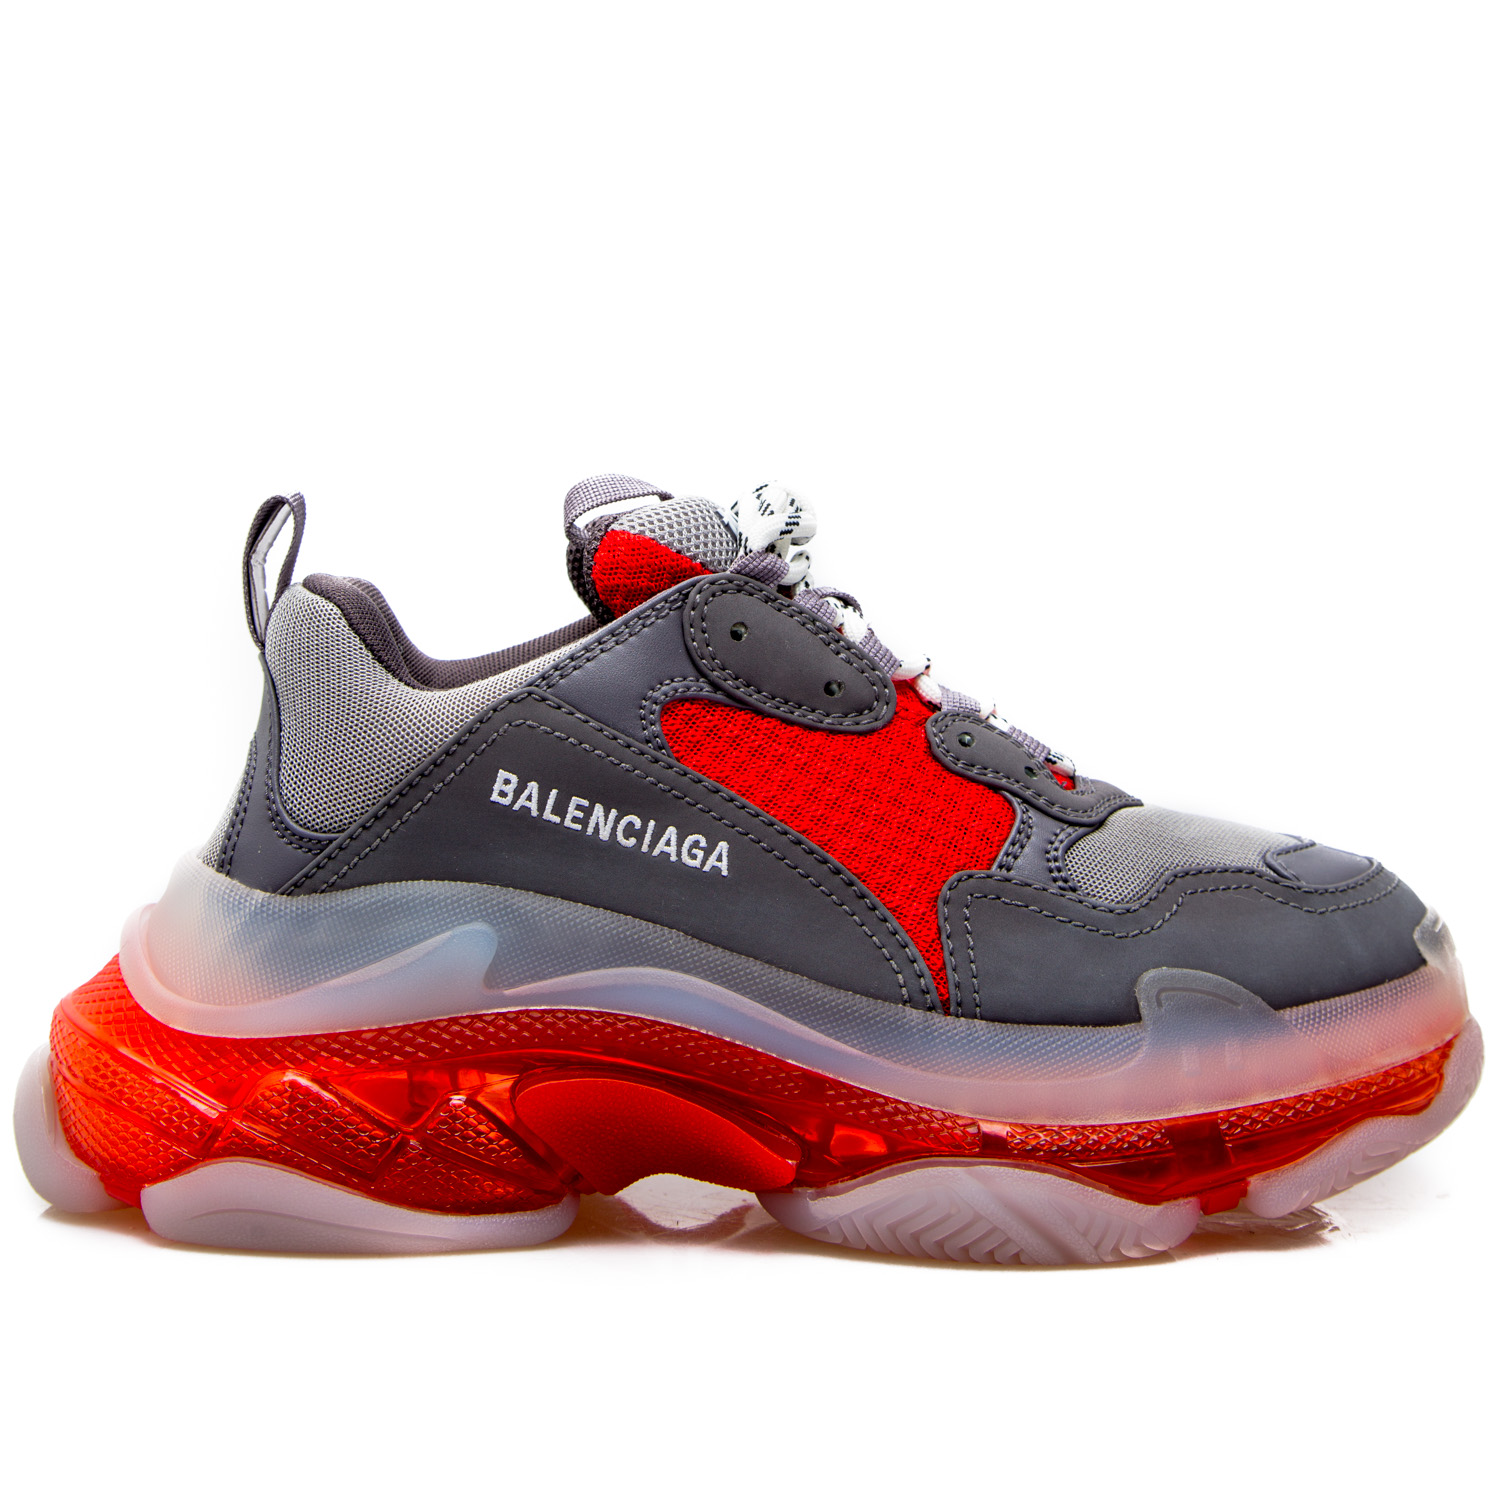 Balenciaga Triple S Blue Red Grailify Sneaker Releases